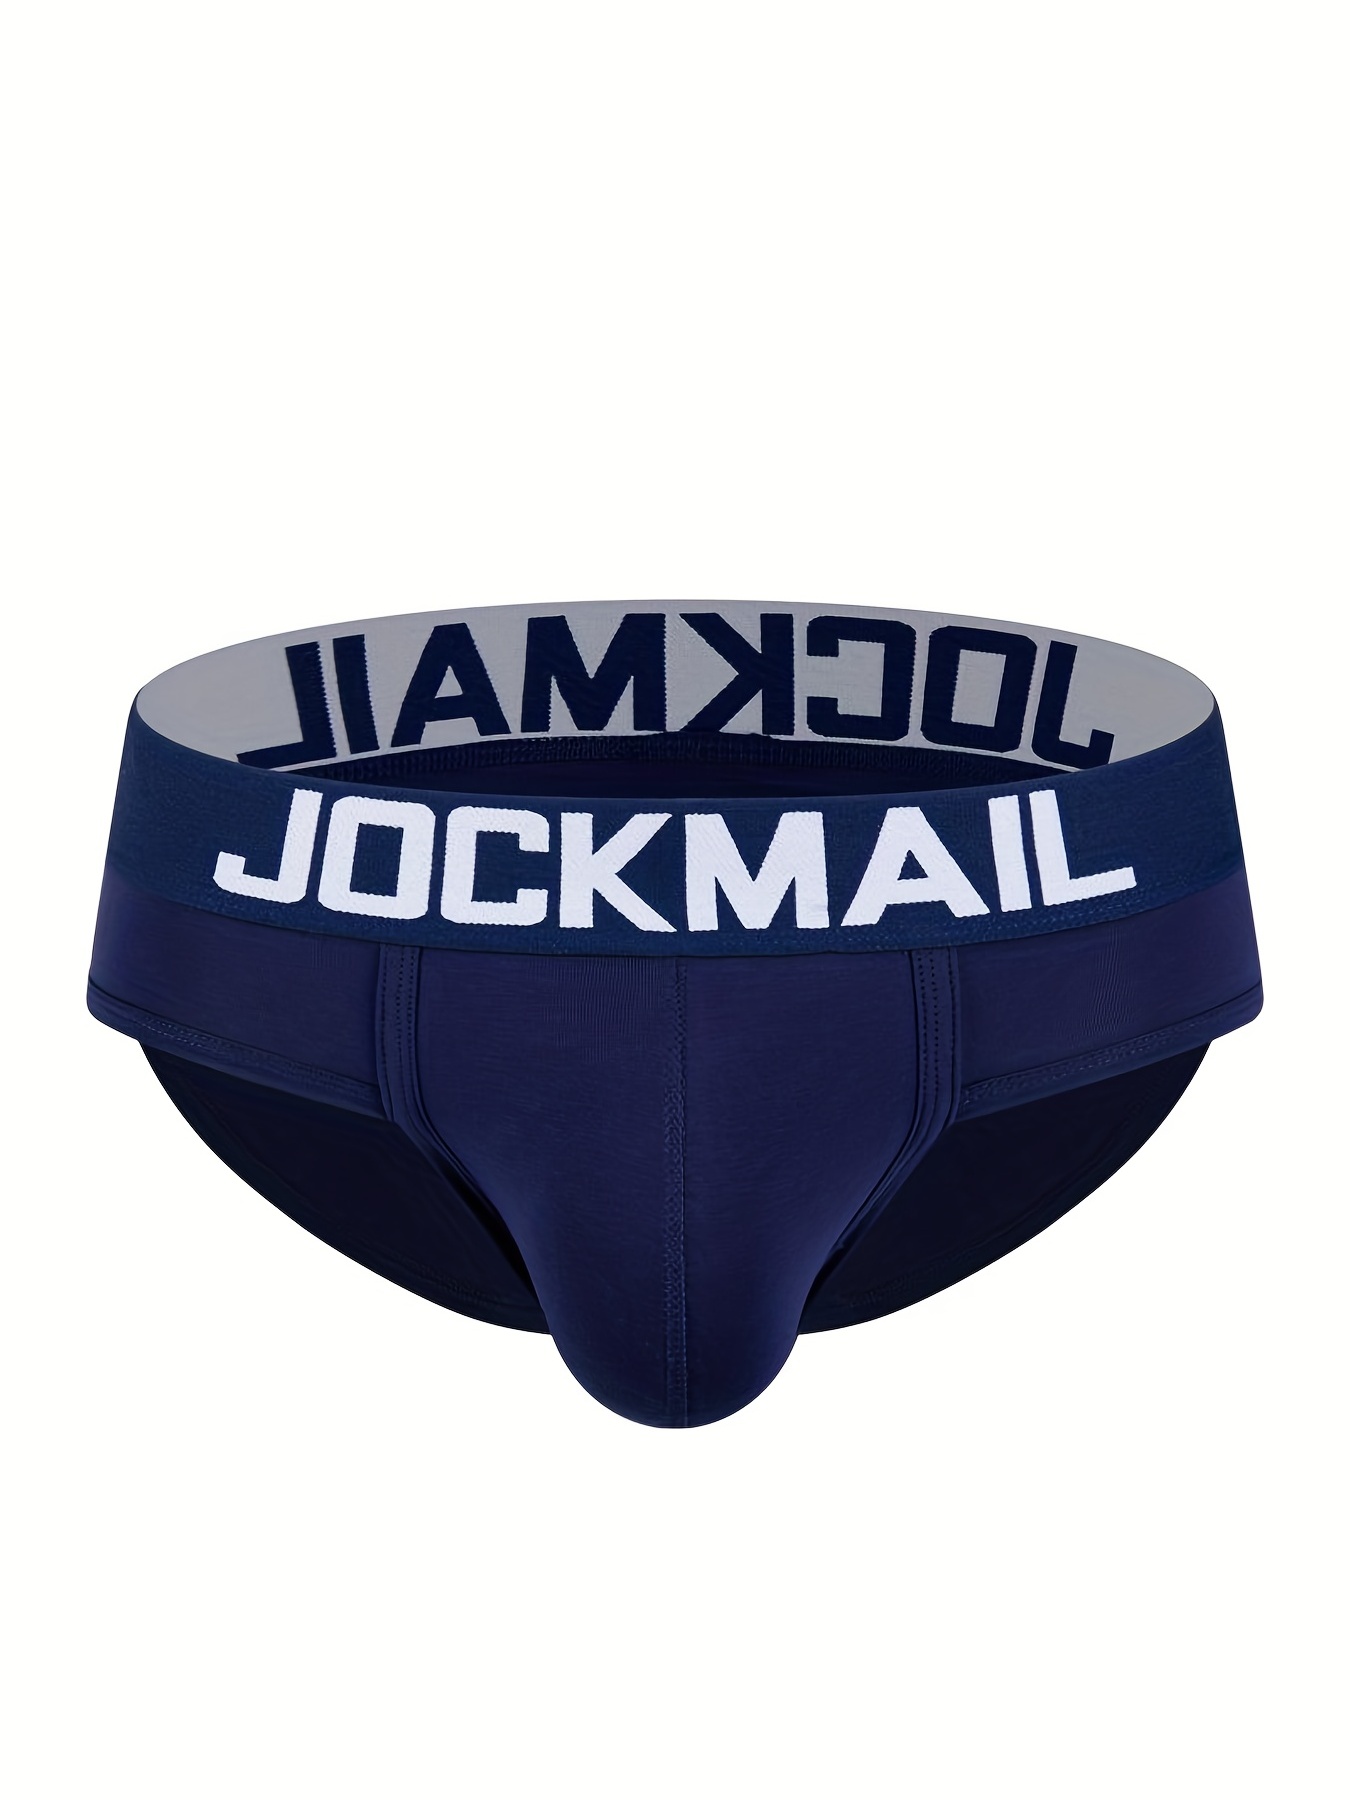 JOCKMAIL Mens Briefs Underwear Athletic Underwear Brief Cotton